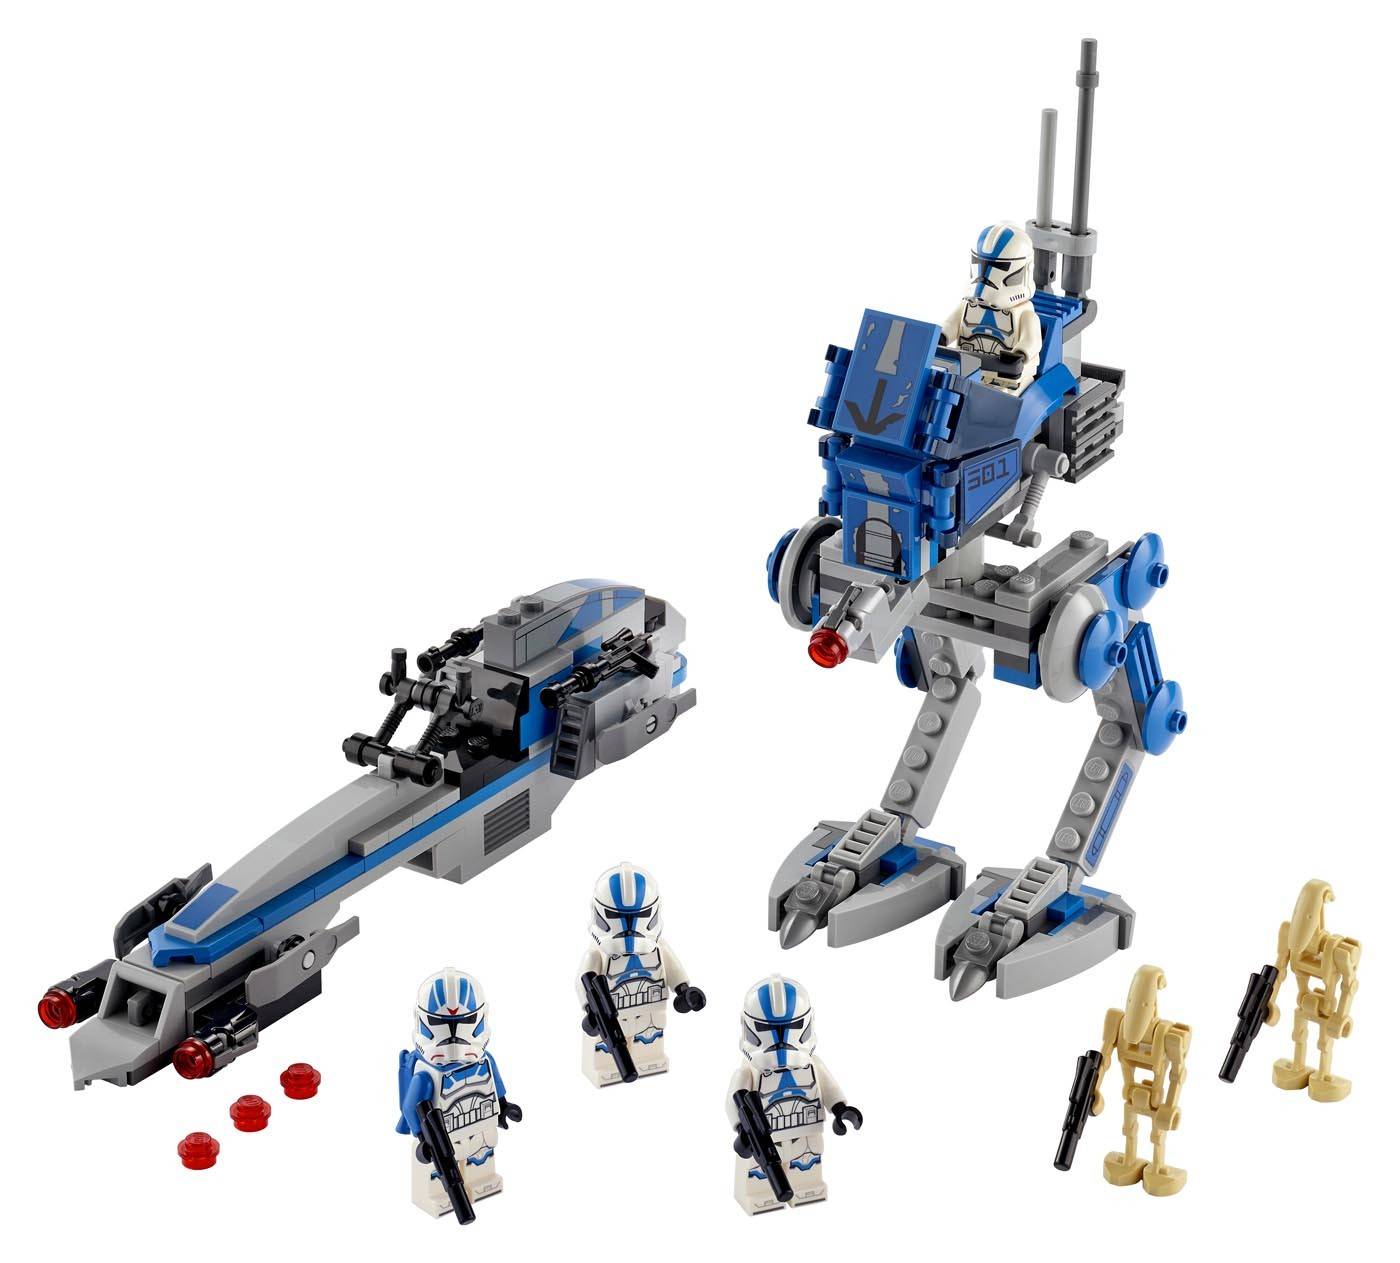 LEGO Star Wars Żołnierze klony z 501 legionu 75280